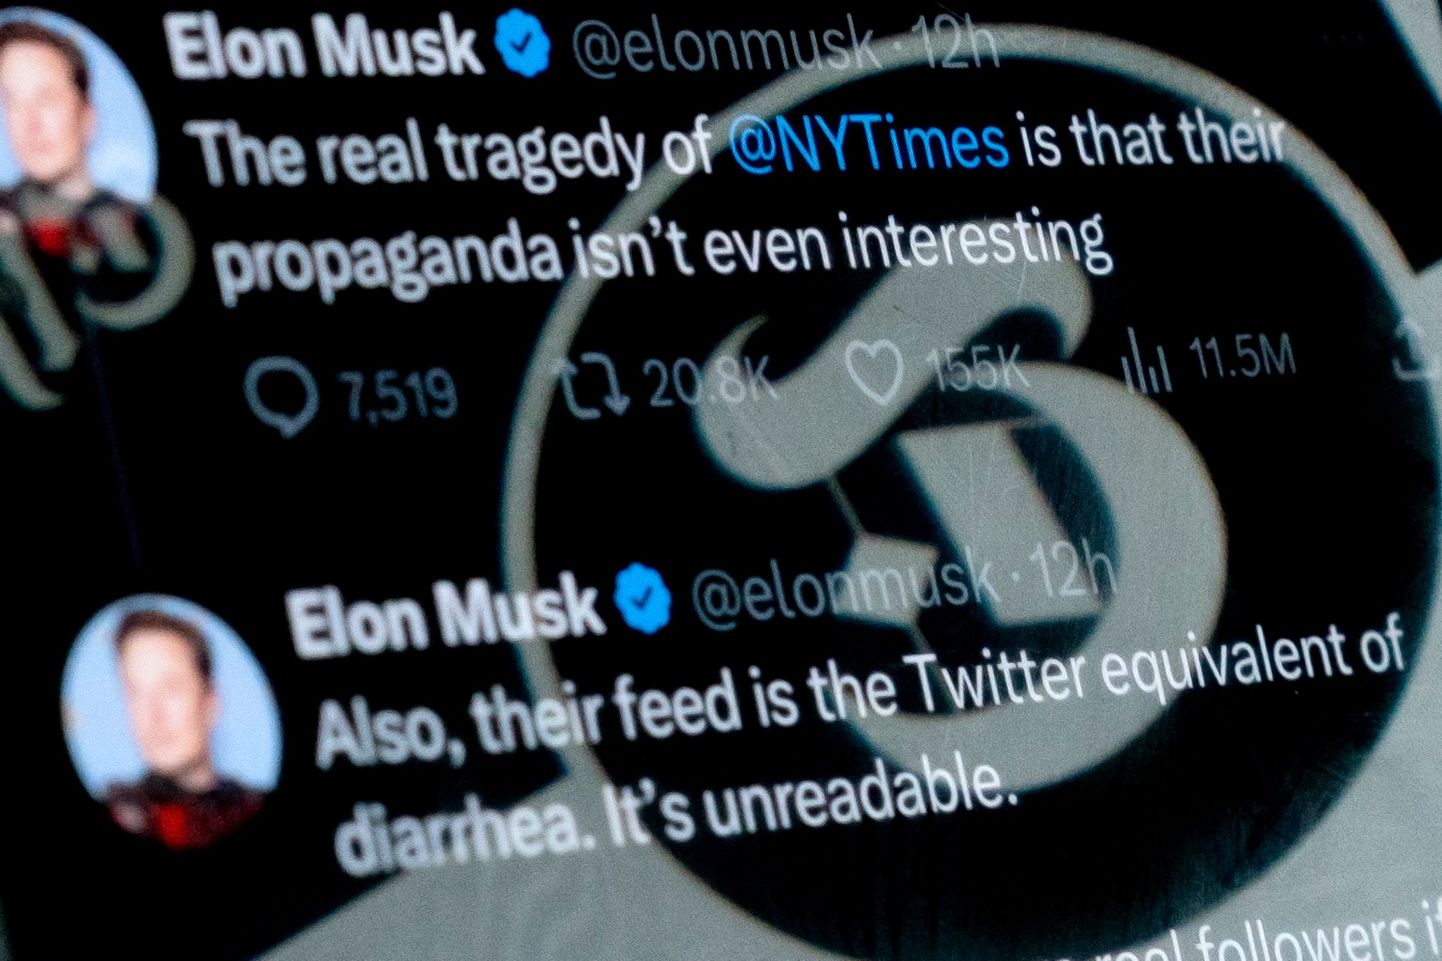 Musk kirjutamas Twitteris, et NYT propaganda pole isegi huvitav ning nende postitused on otsekui kõhulahtisus.